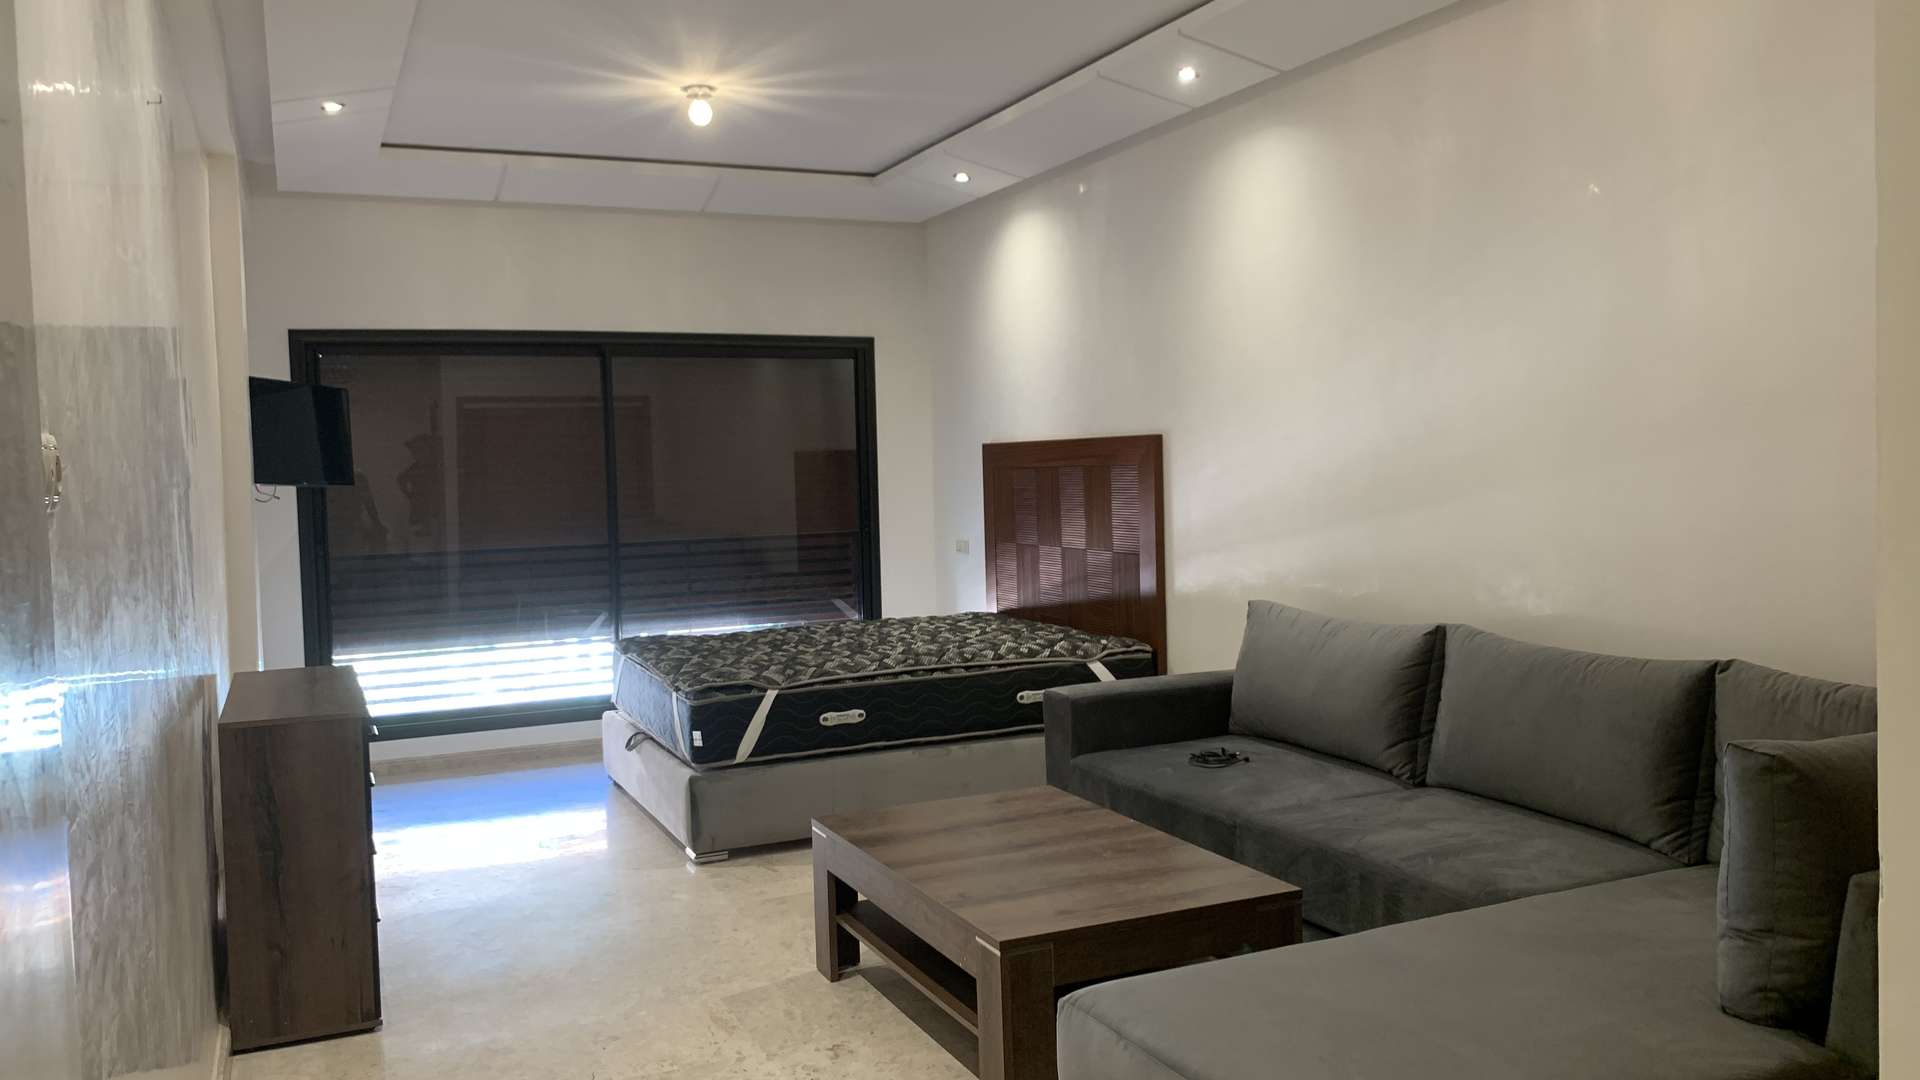 Location longue durée ,Appartement,Studio en location à Guéliz. Surface totale 38.0 m². Meublé,Marrakech,Guéliz